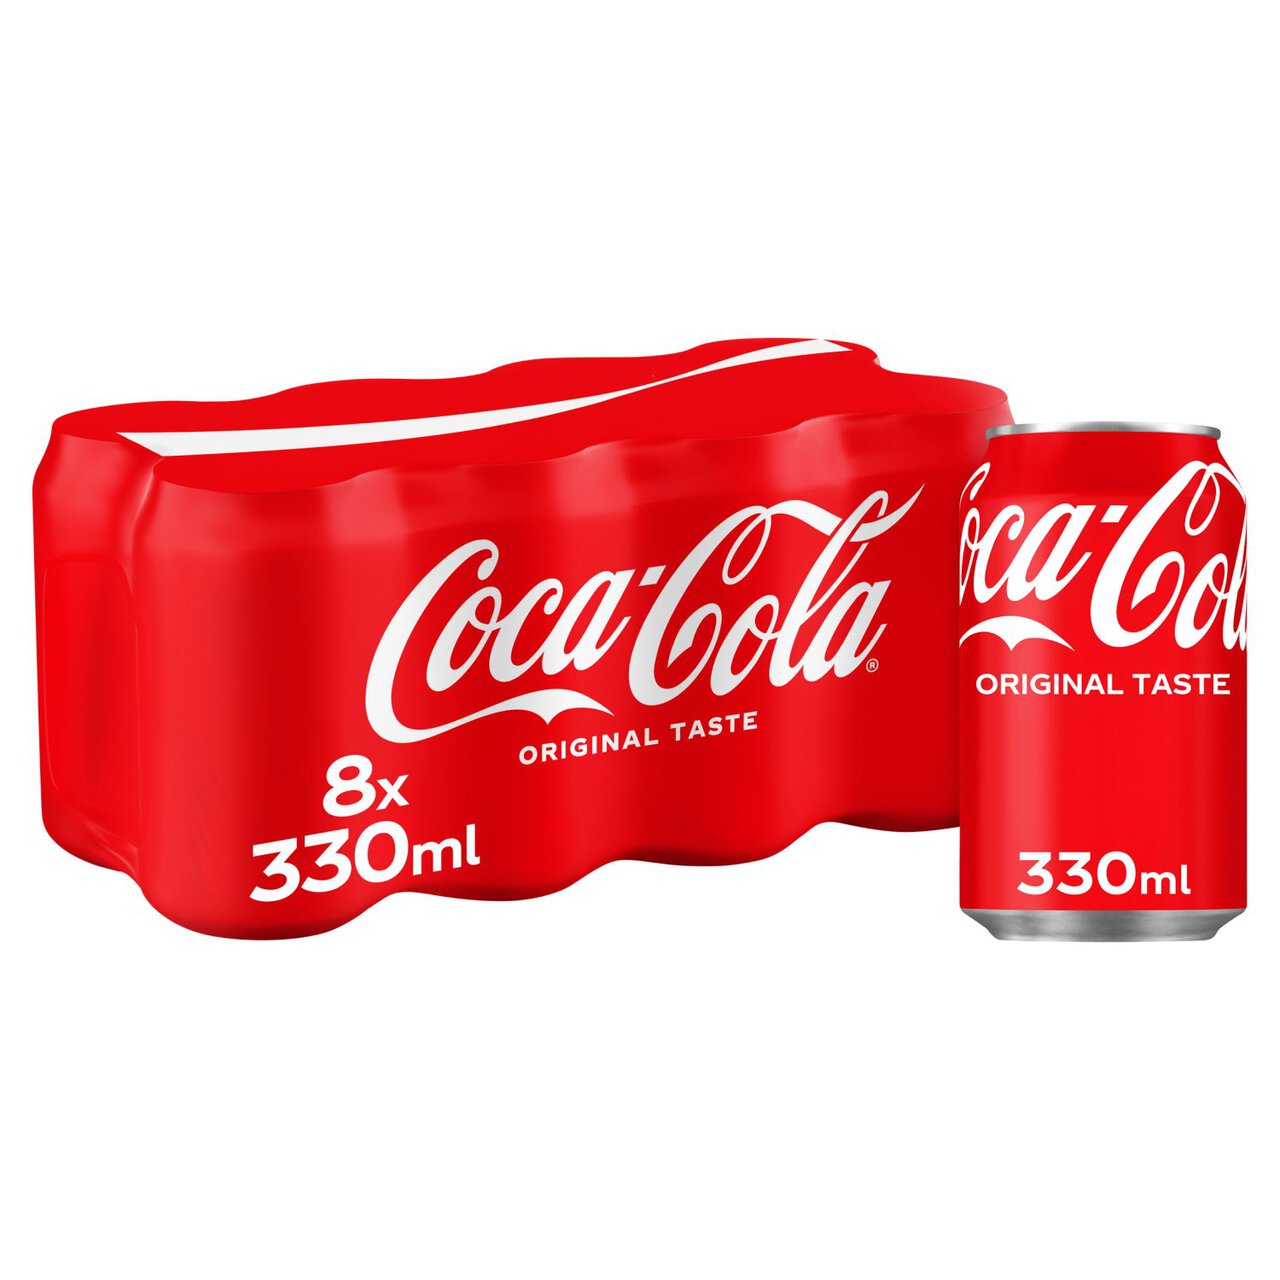 Coca-Cola Original Taste 8 x 330ml